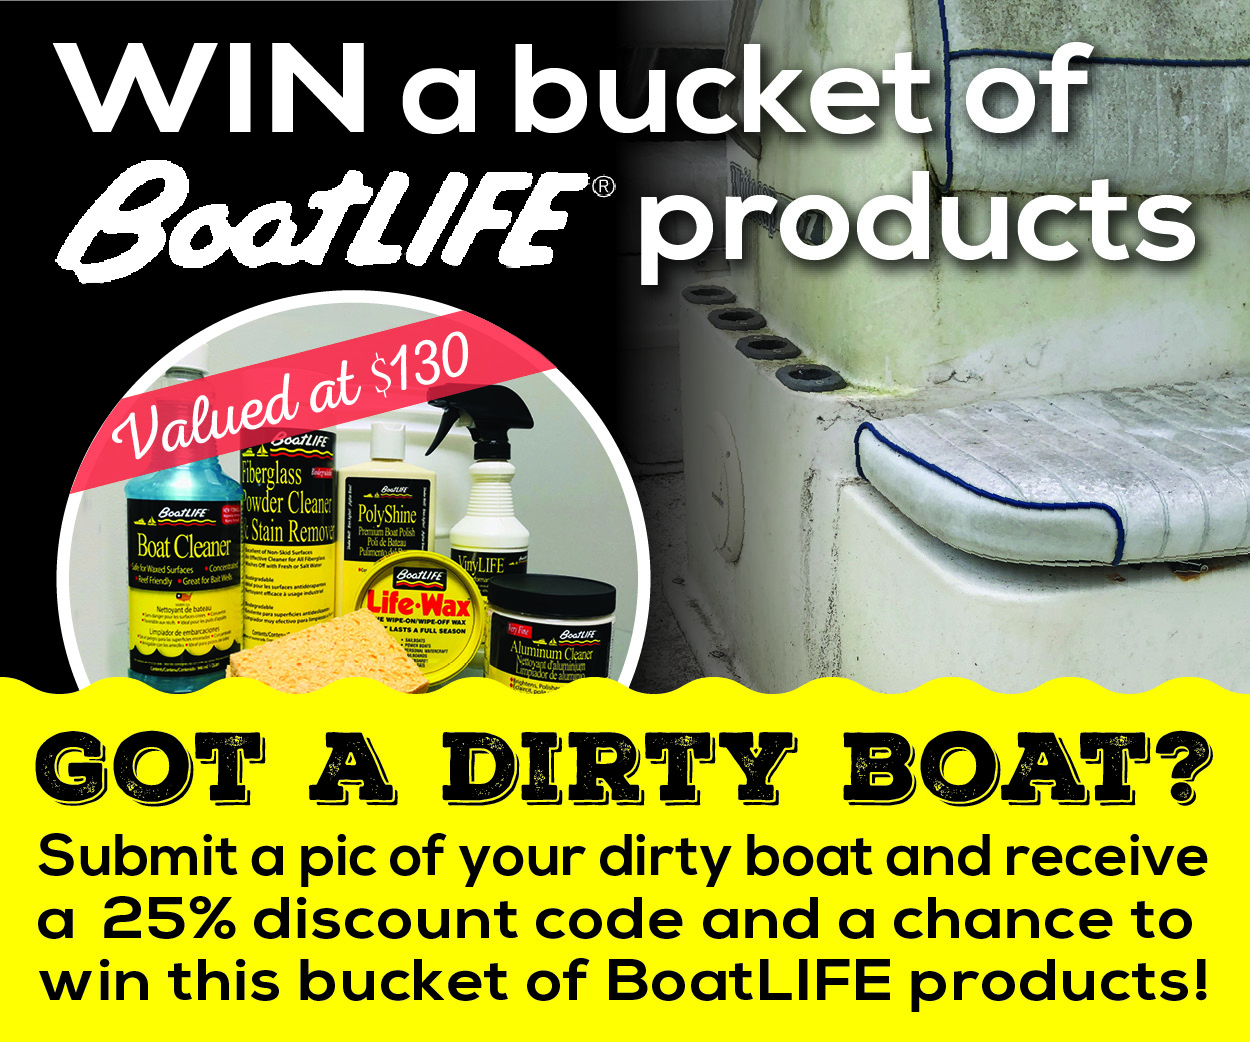 SpinSheet & BoatLIFE Partner on “Dirty Boat” Contest Image